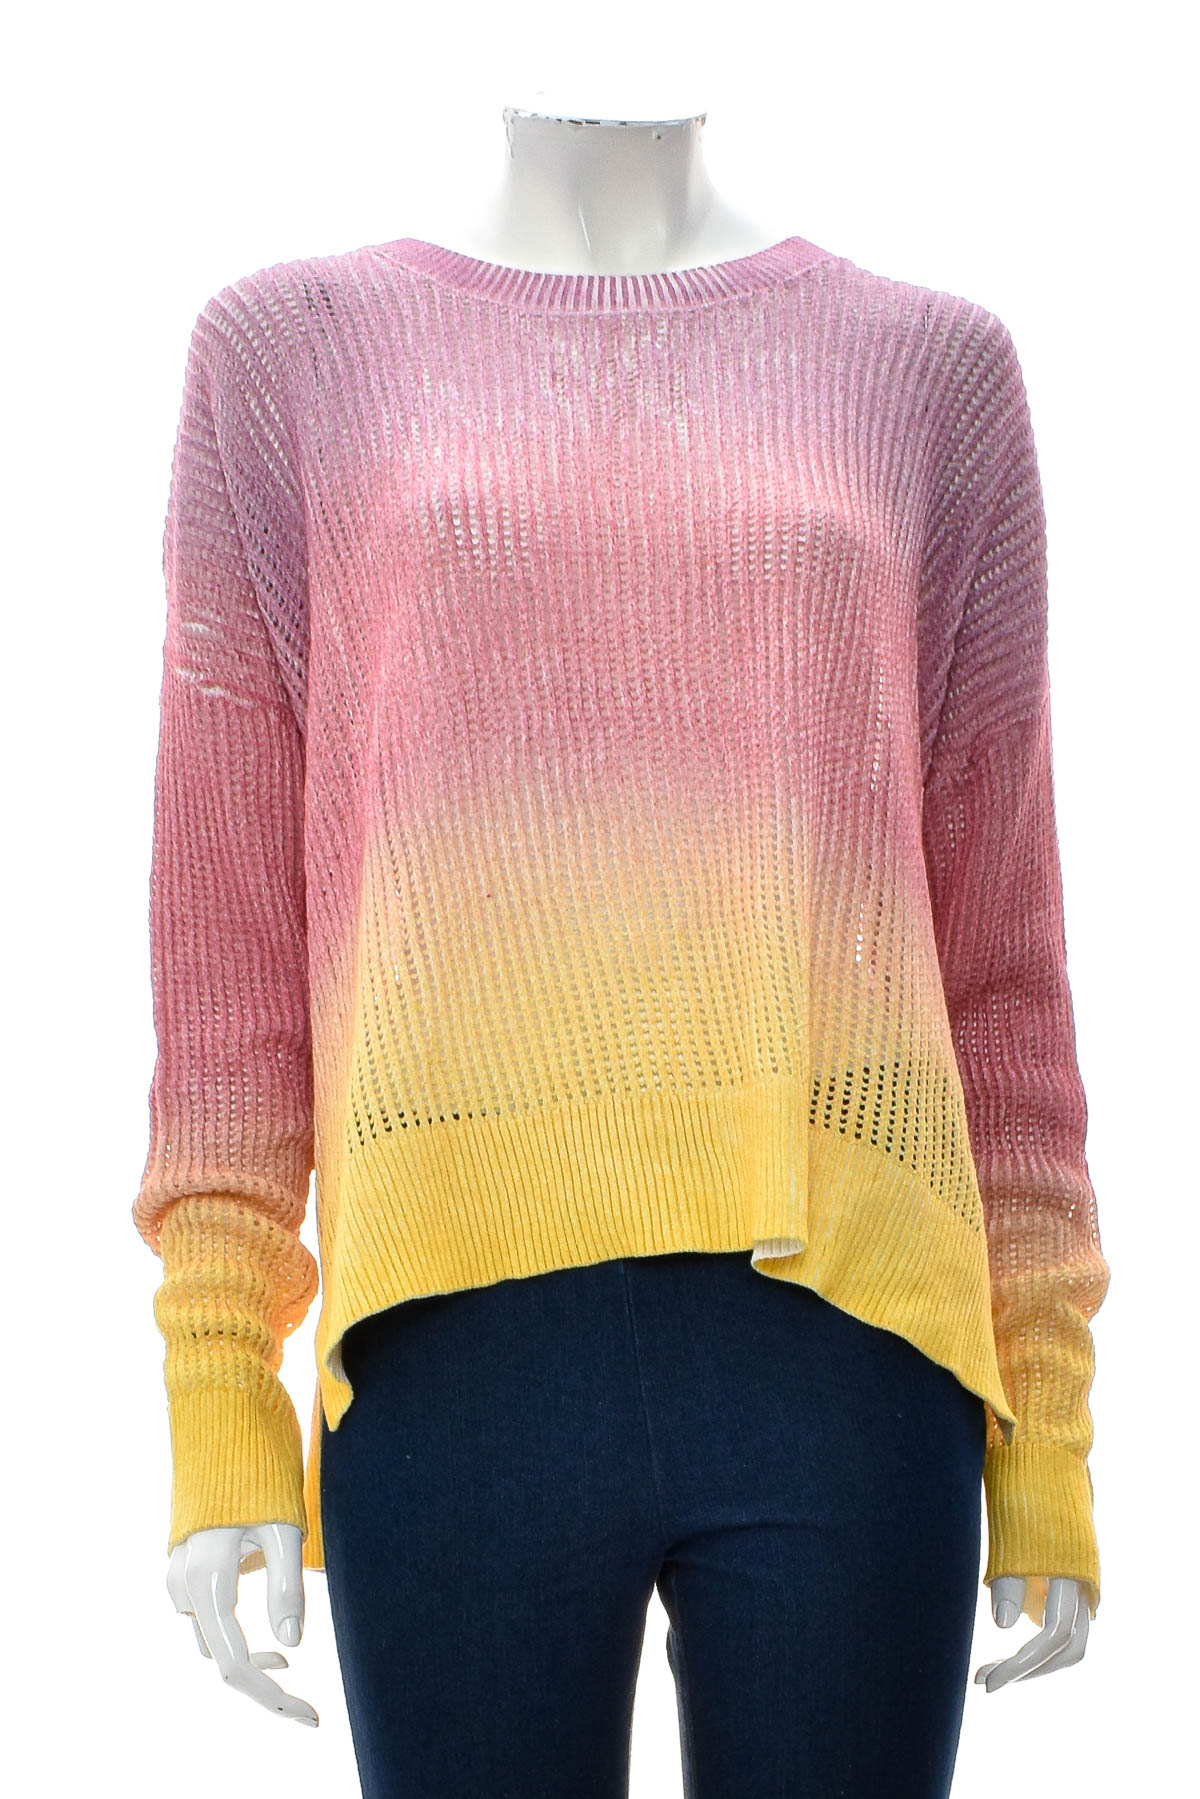 Women's sweater - Soho New York - 0